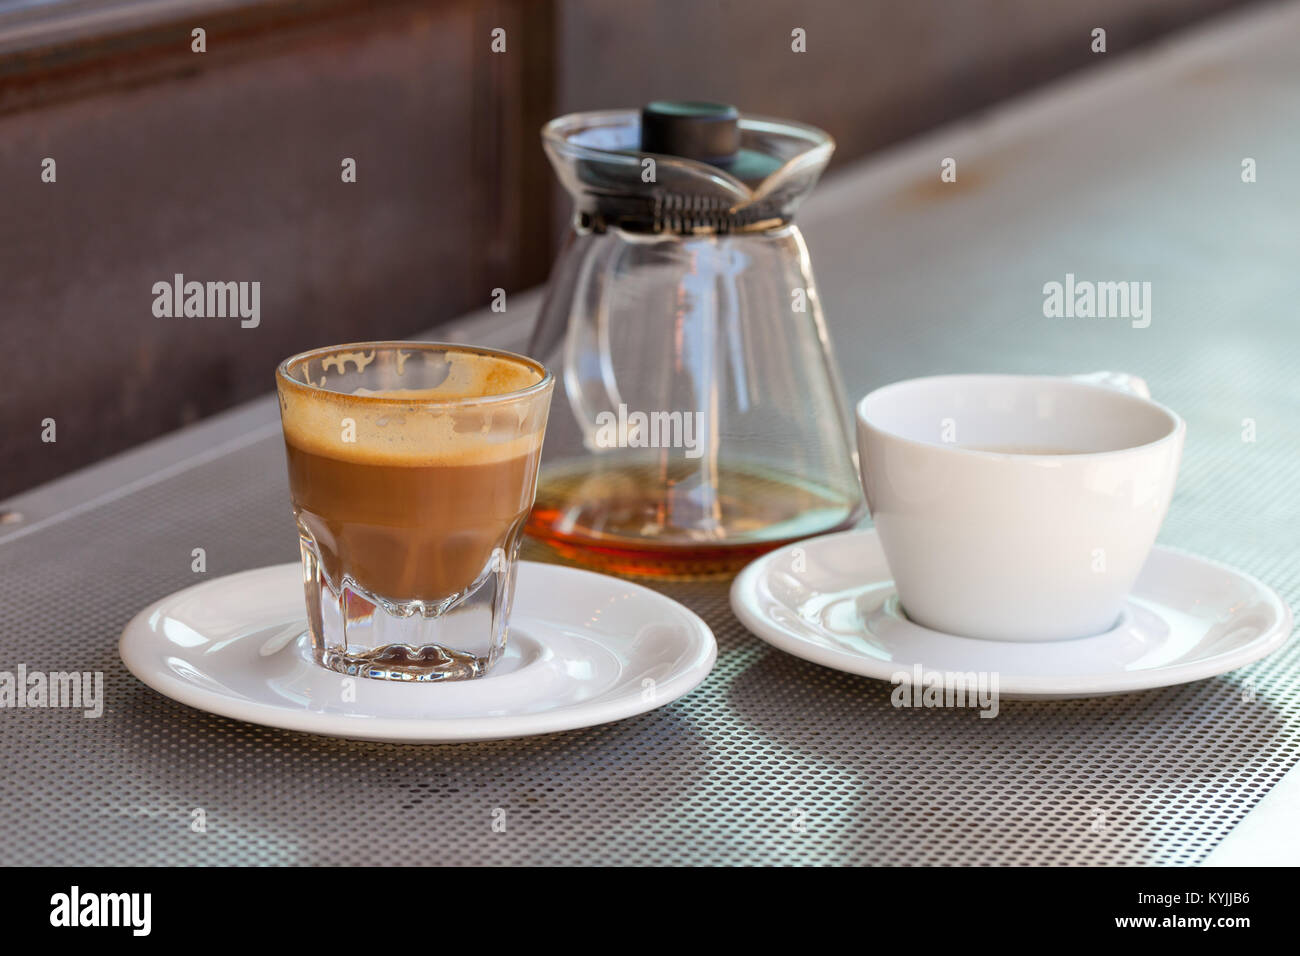 Café cortado consommé dans un verre avec ceramic white tasse et théière sur la table métallique et un fond rouillé Banque D'Images